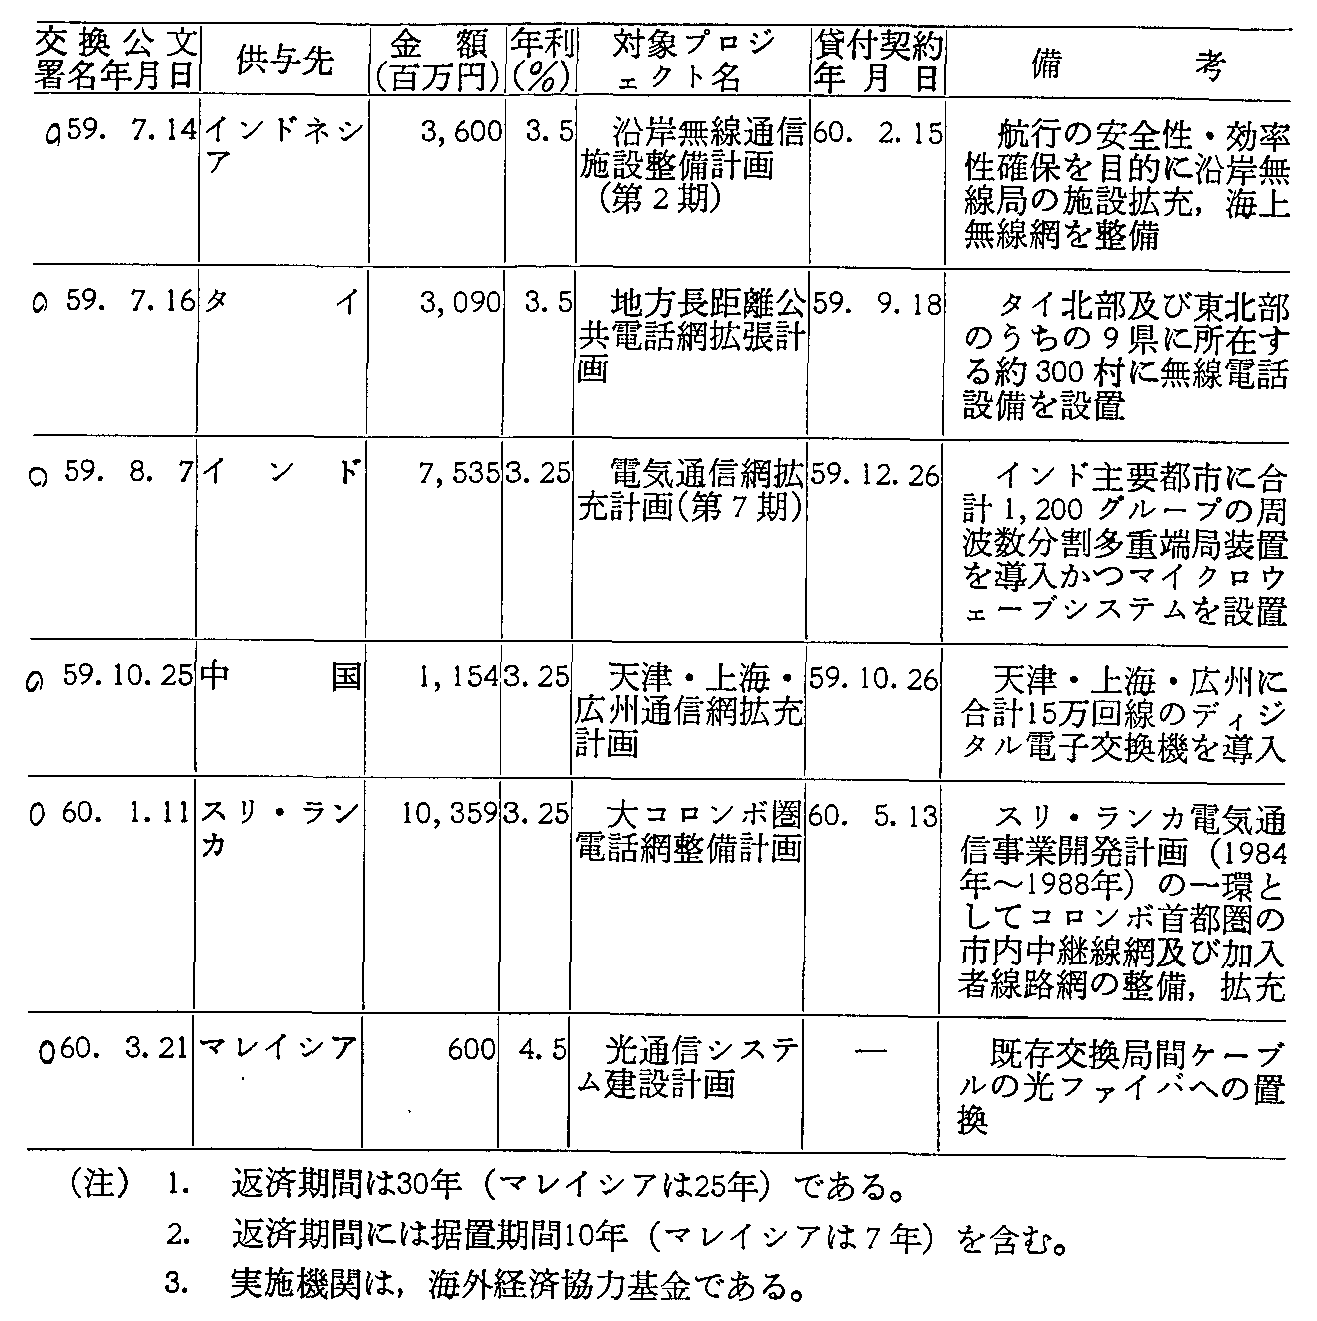 資料4-39 通信・放送分野における円借款の実施状況(59年度)(2)